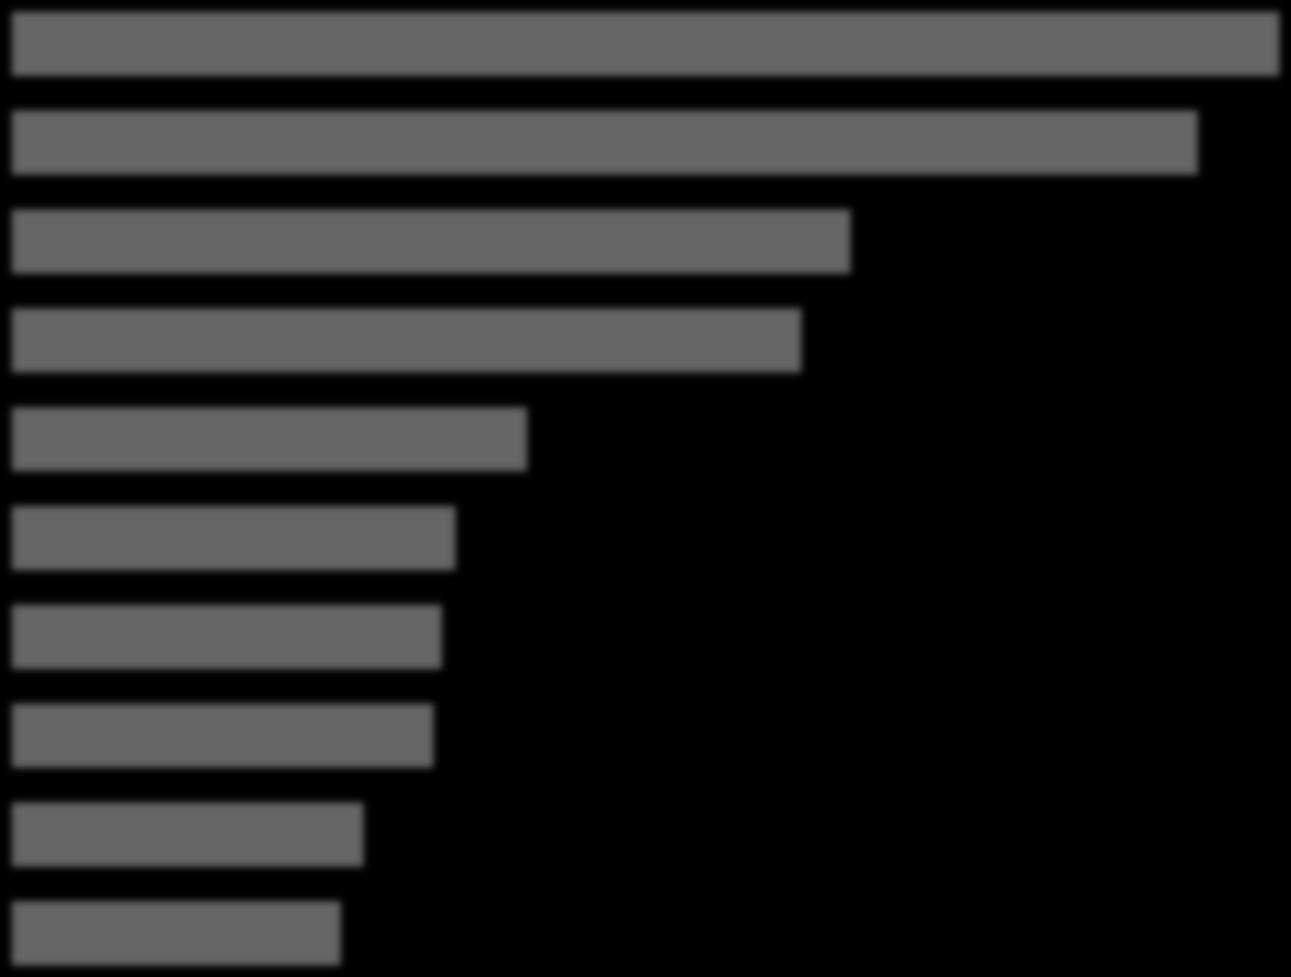 TOP 10 produktových segmentů Květen 2012 0 10 20 30 40 50 60 Miliony Kč Peněžní zprostředkování 57,1 Motorová vozidla a jejich motory 53,4 Činnosti související s telekomunikační sítí Široký sortiment